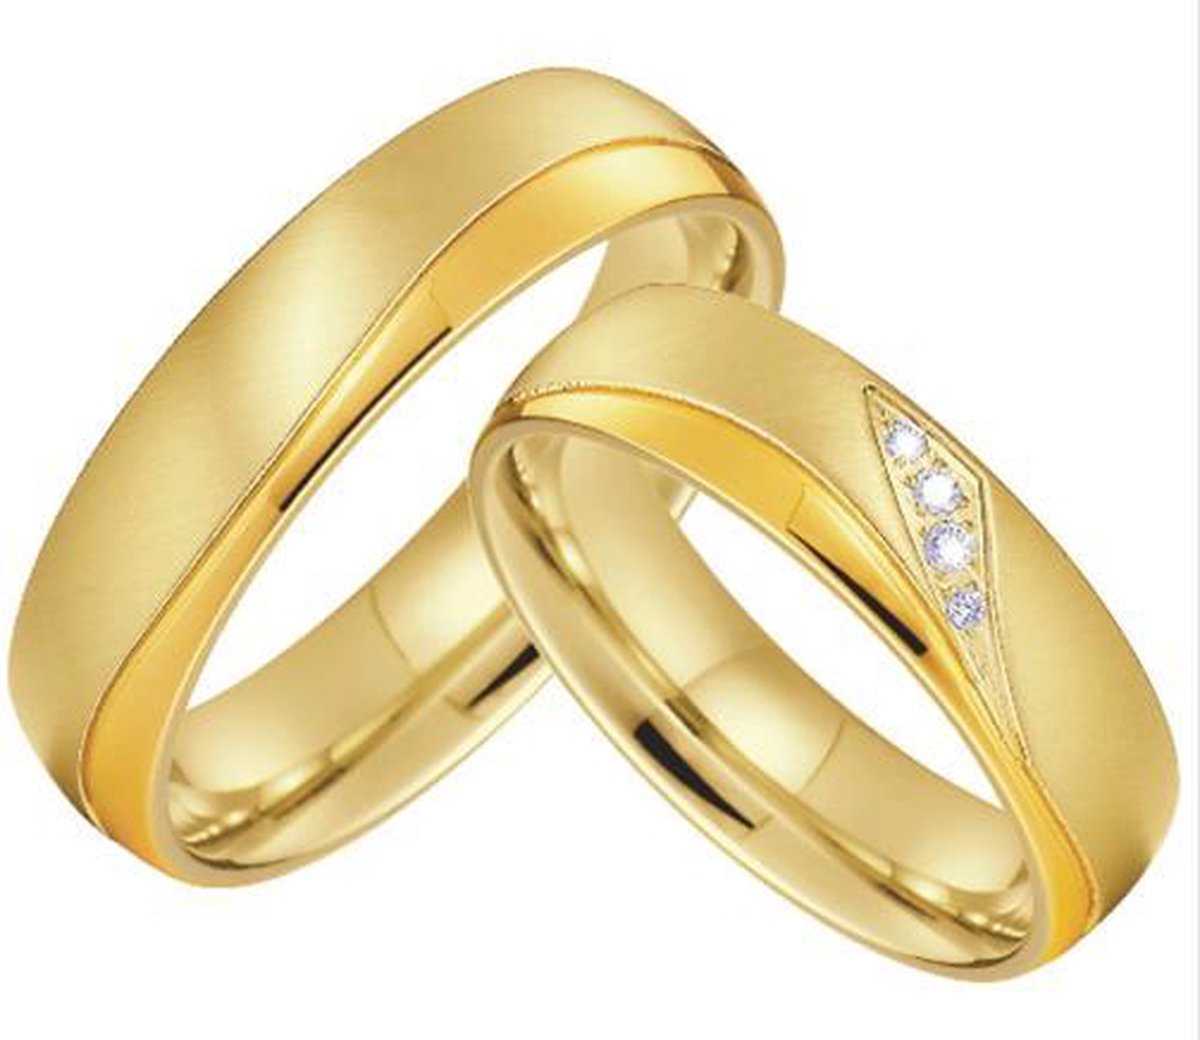 Jonline Prachtige Titanium Ringen voor hem en haar|Vriendschapsringen|Relatieringen| Goud Kleur - Jonline